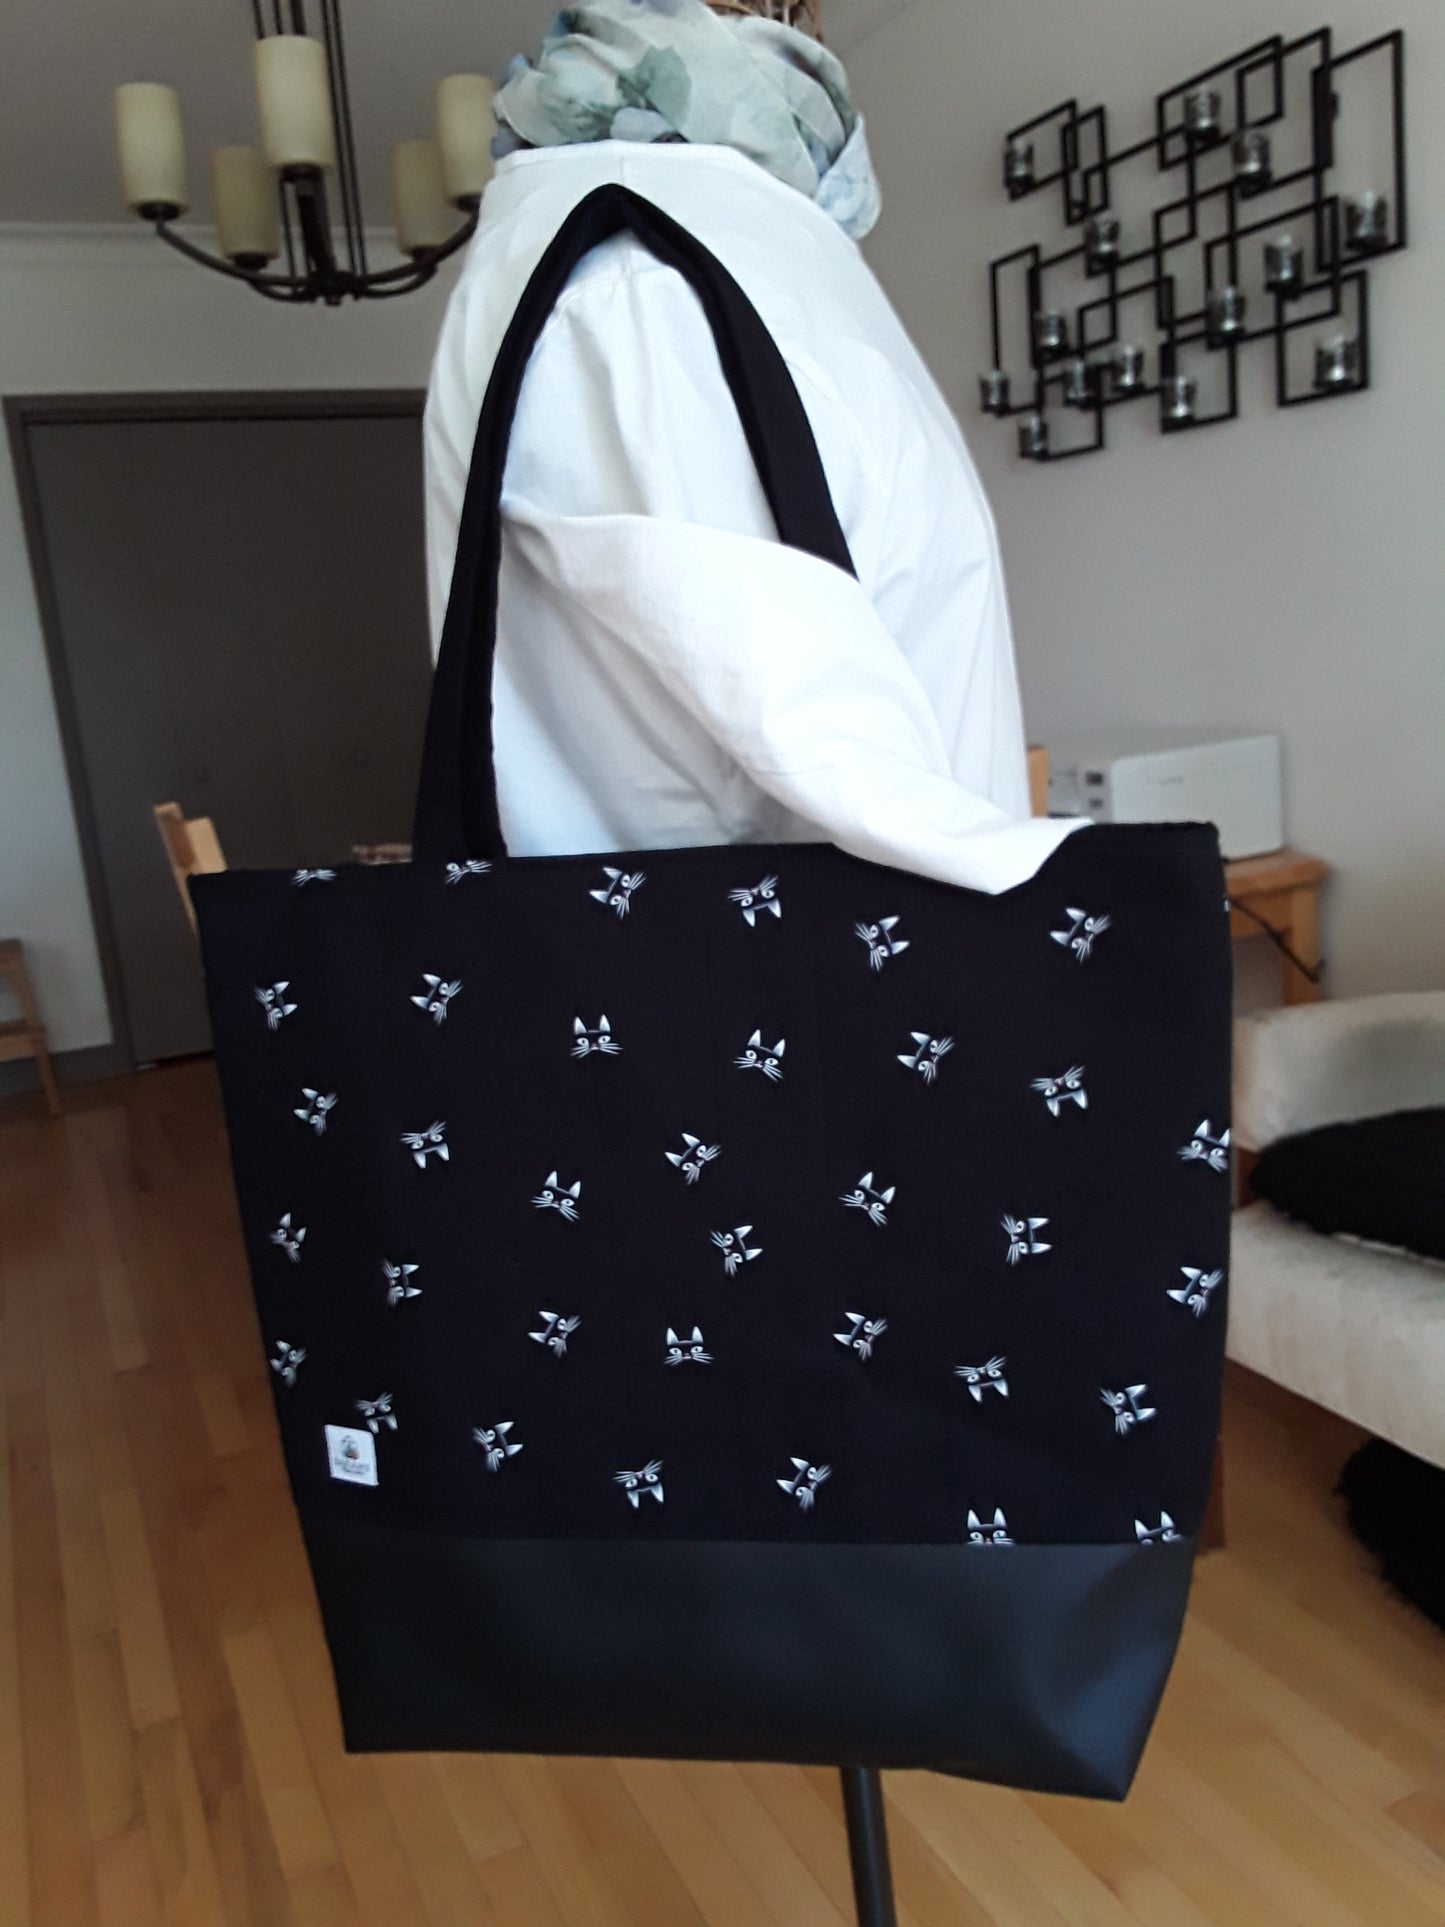 Tote Bag, Black Cats Tote Bag, Black Tote Bag, Black Project Tote, Cats Tote Bag, Large Carry Bag, Gift for Her, Gift for Knitter, Gift for Crocheter